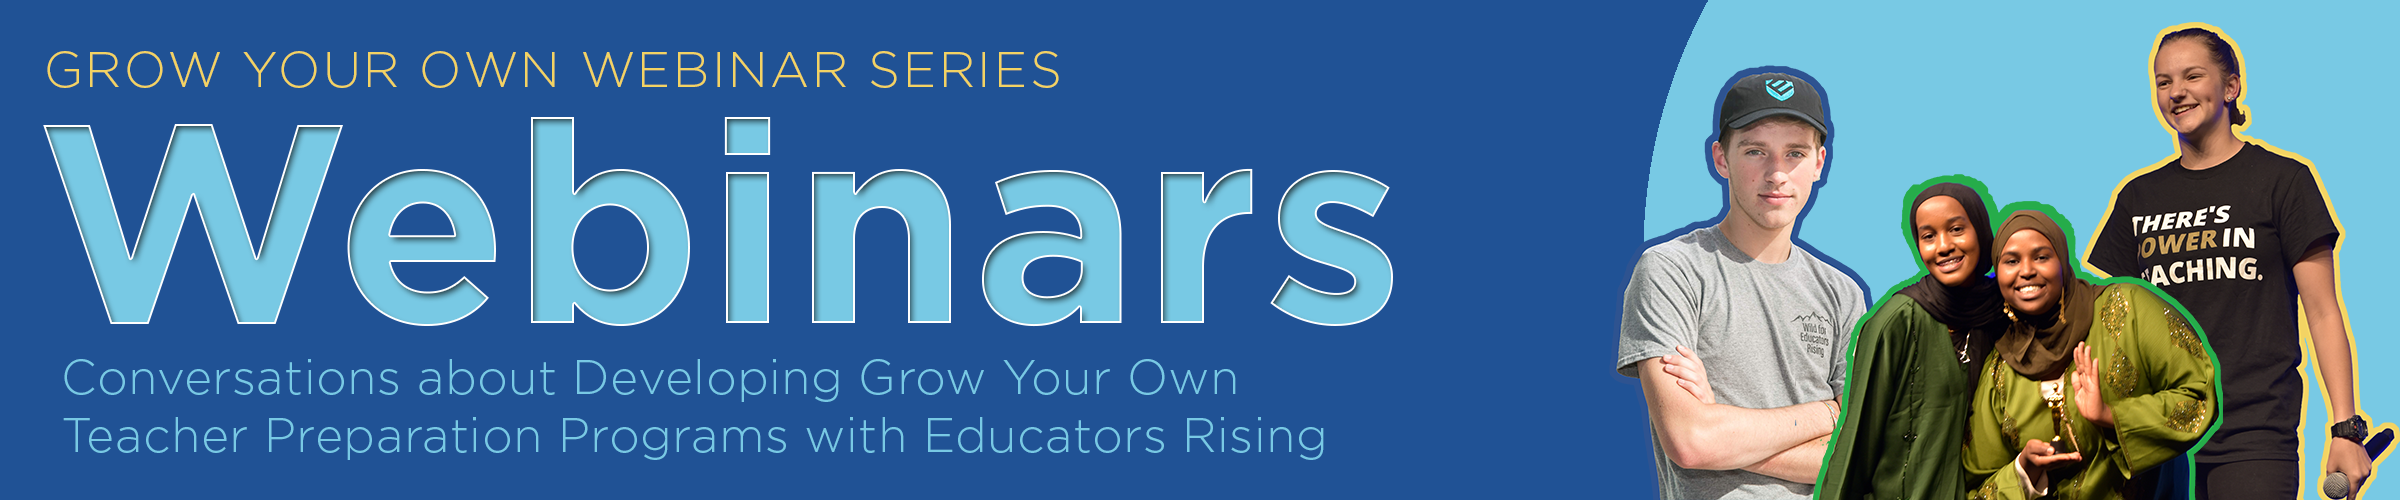 Educators Rising Webinar Series